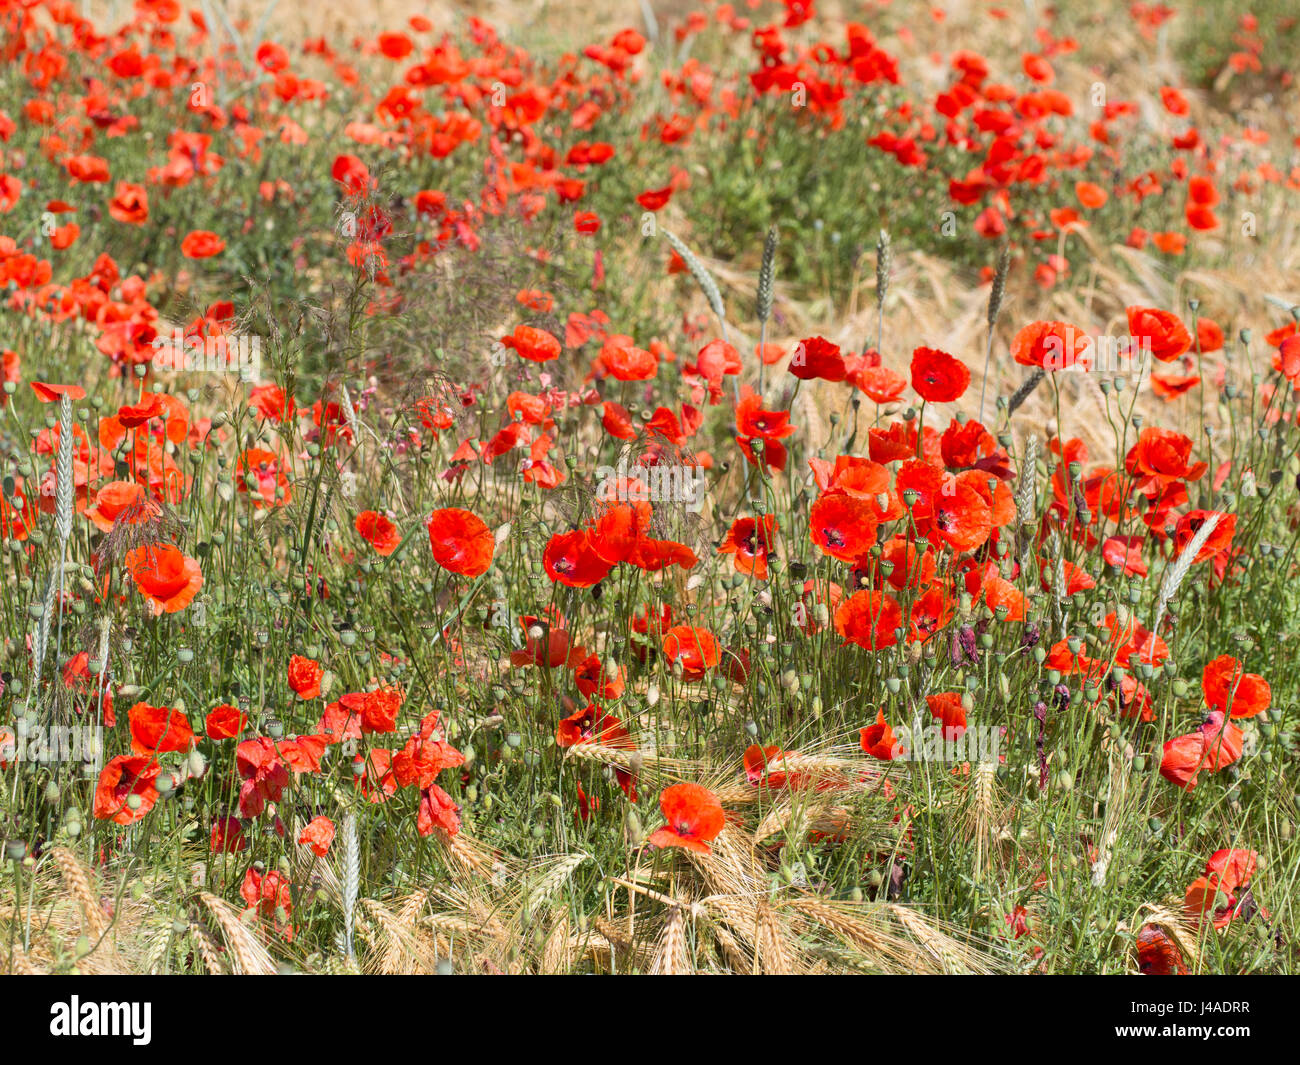 Fleurs de pavot rouge dans un champ de blé - Papaver rhoeas Banque D'Images